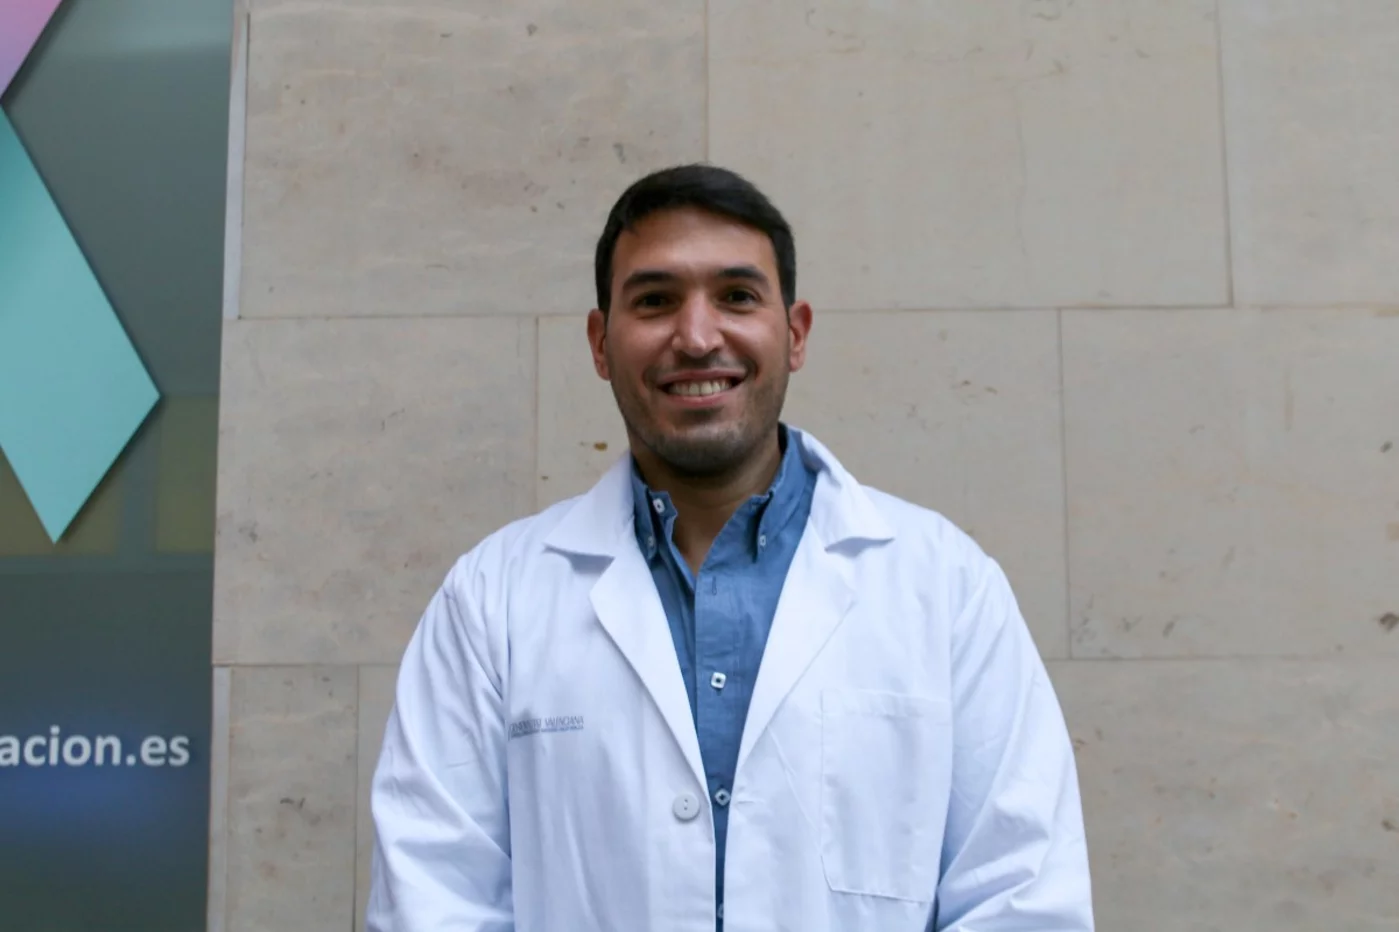 Rafael de la Espriella, del Grupo de Investigación en Insuficiencia Cardíaca de INCLIVA, es el investigador principal del estudio publicado en el 'European Journal of Heart Failure'.